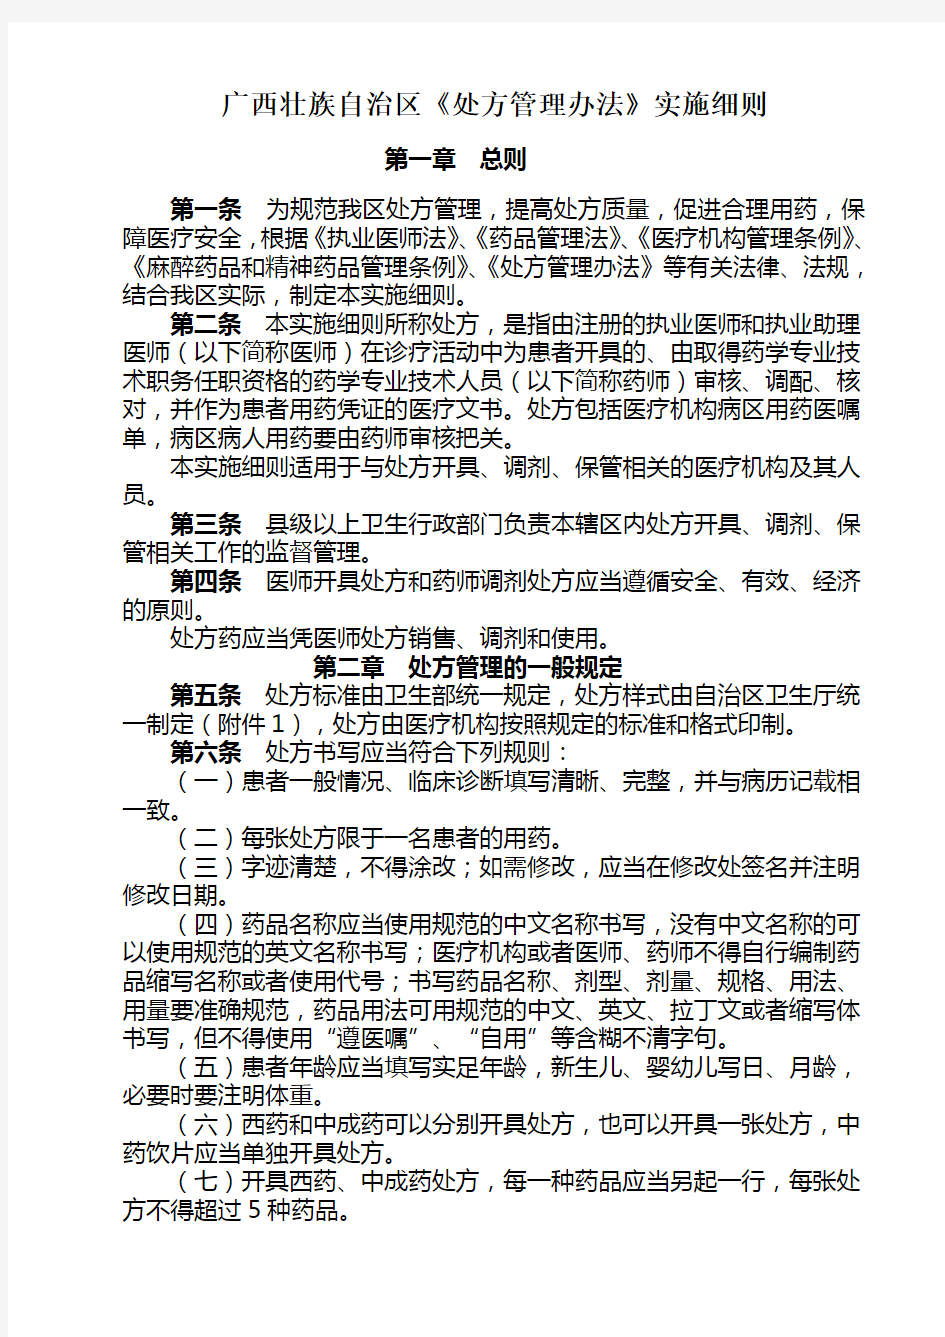 广西壮族自治区处方管理办法实施细则